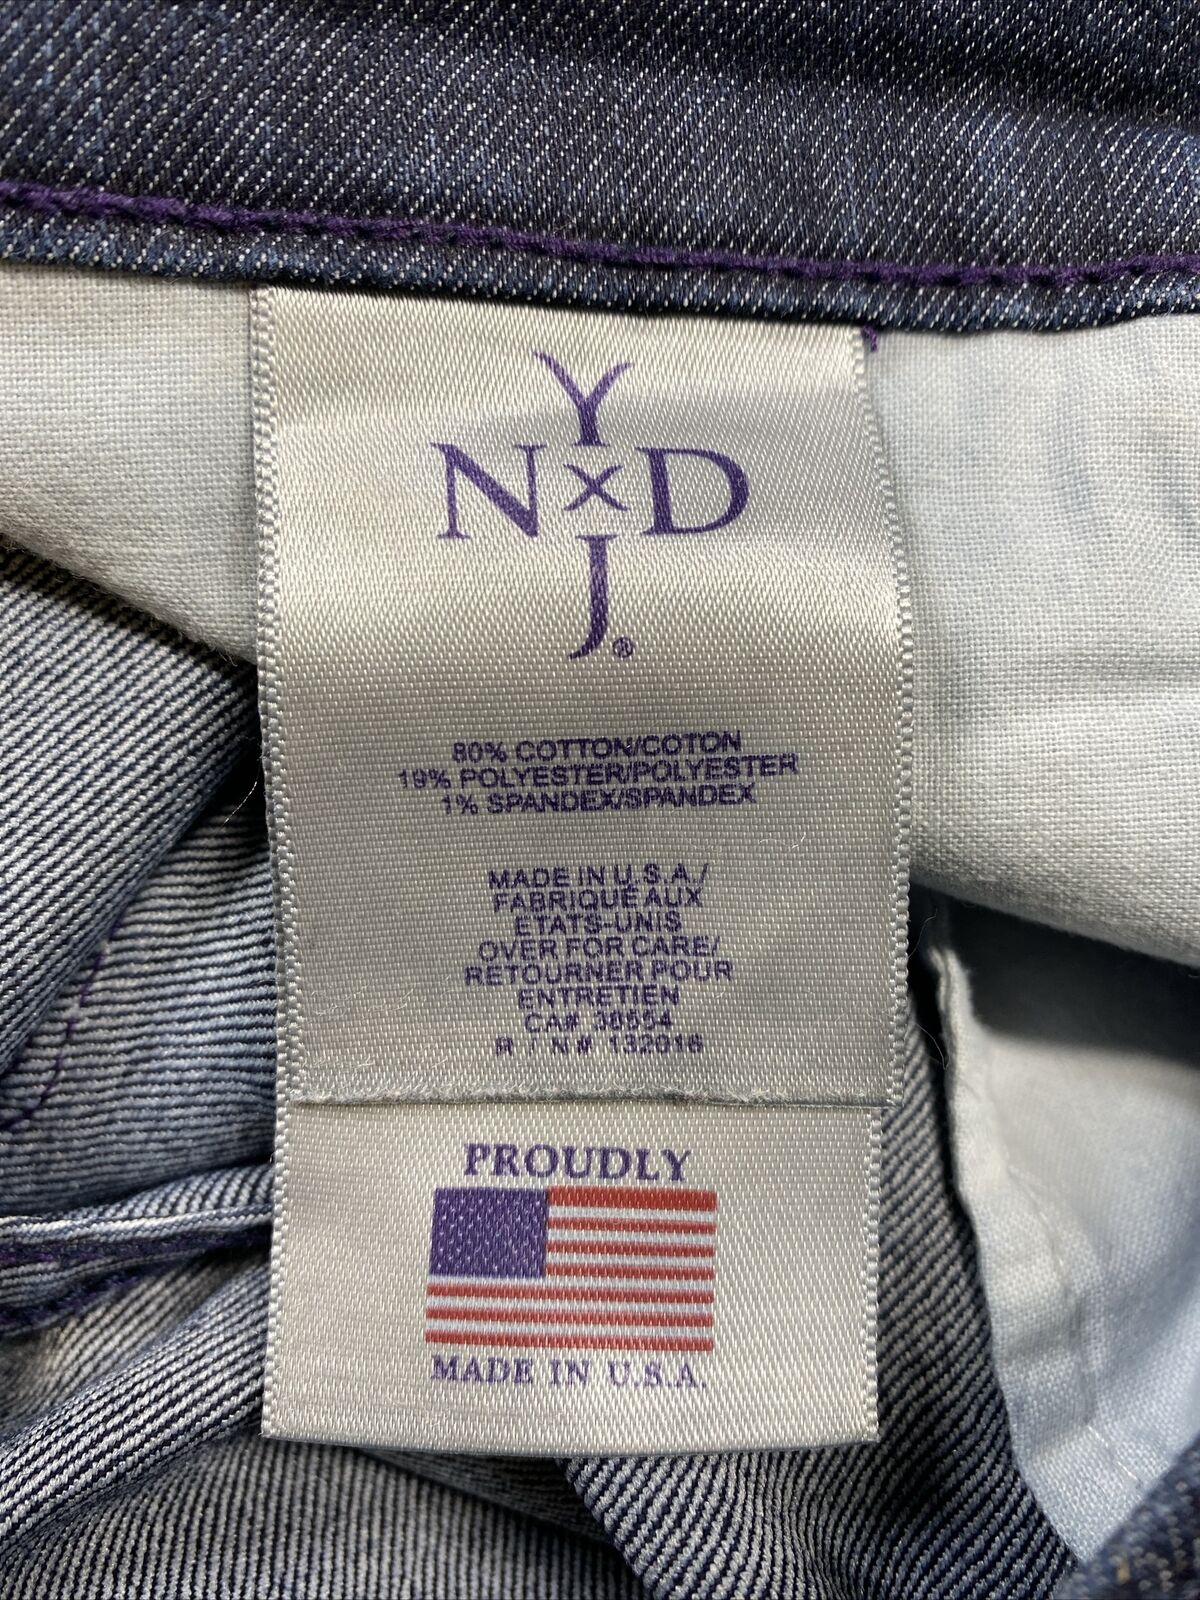 NYDJ Women's Dark Wash Lift Tuck Modern Boot Cut Stretch Jeans - 8